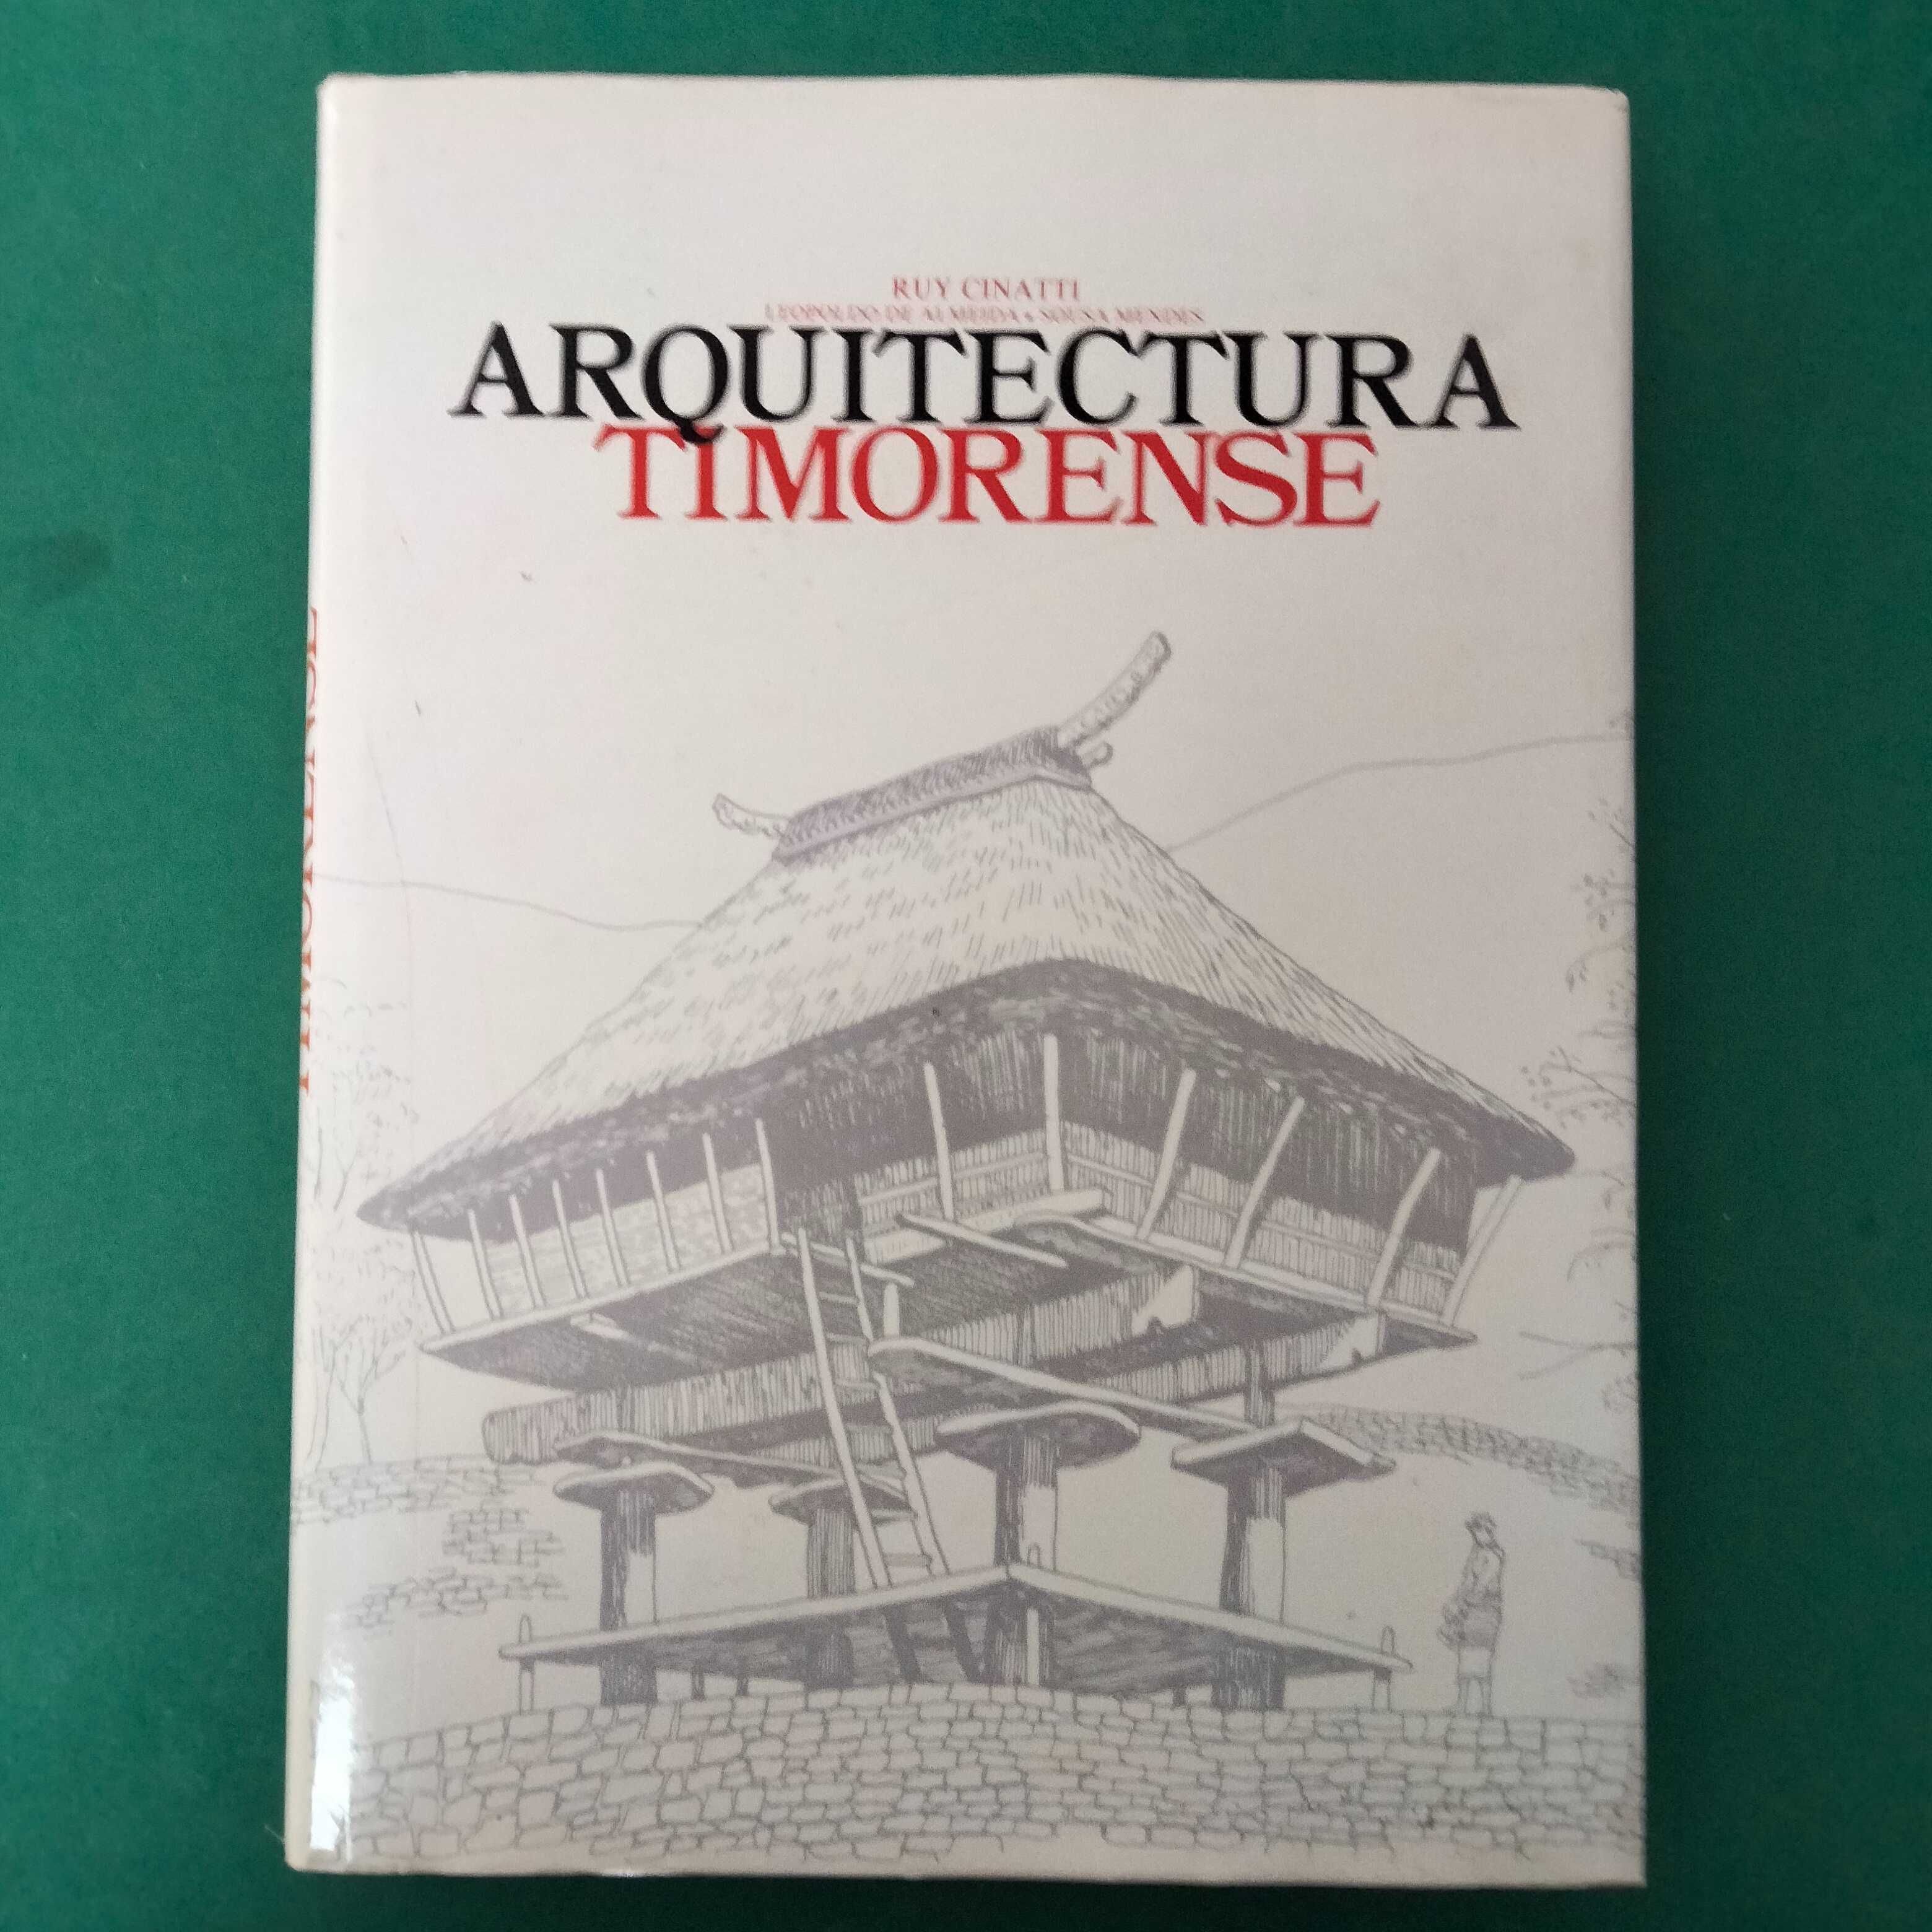 Arquitectura Timorense - Ruy Cinatti